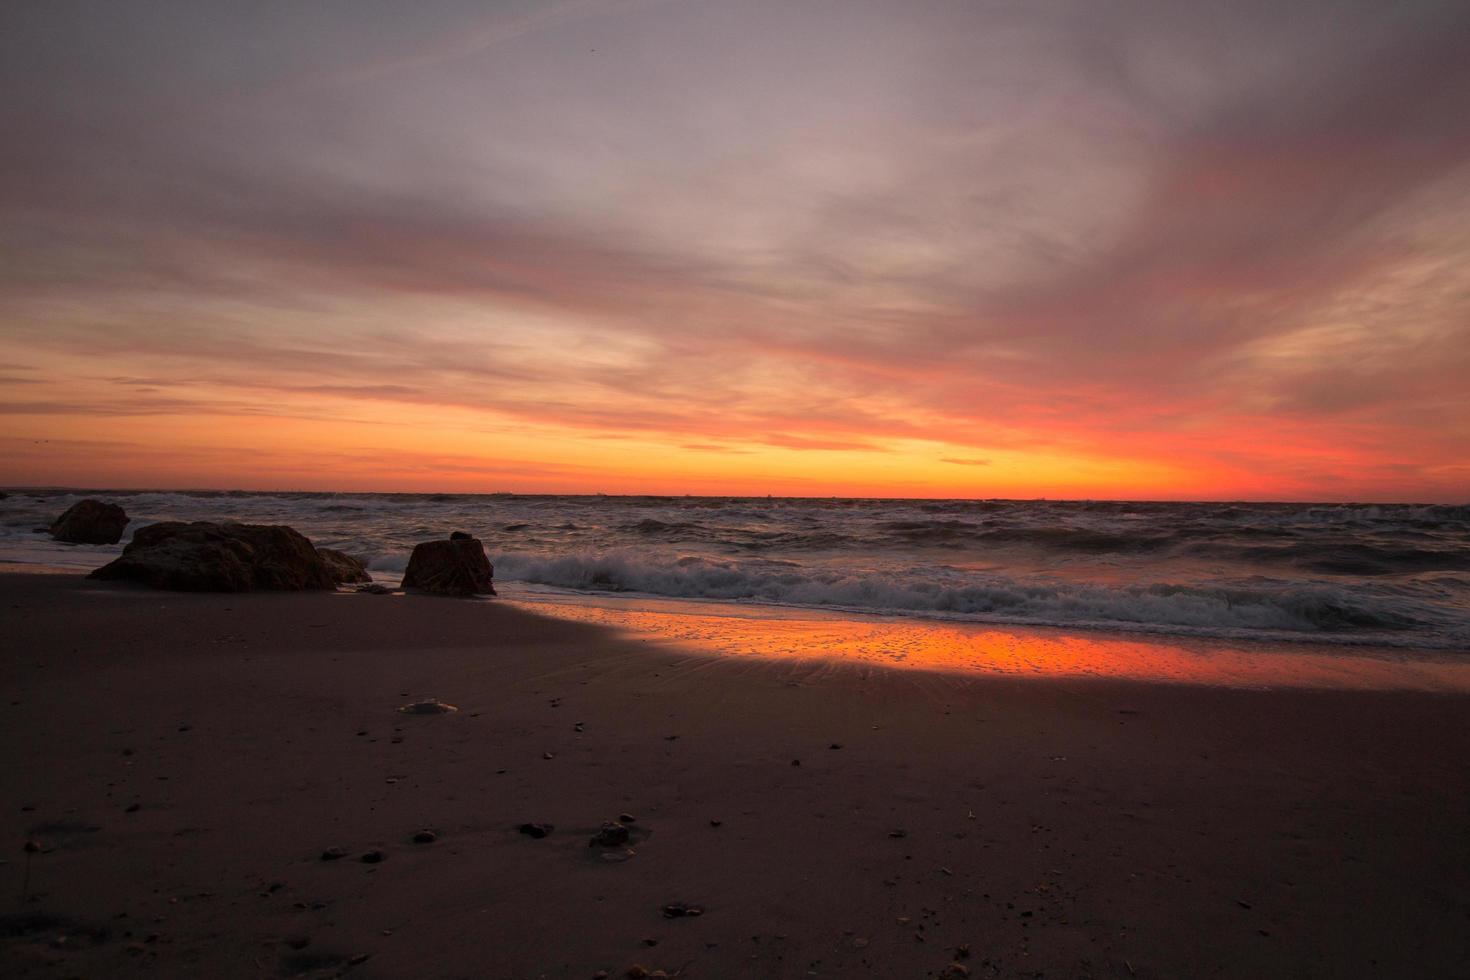 beau paysage marin au lever du soleil, ciel coloré rose et orange et tempête dans la mer. photo